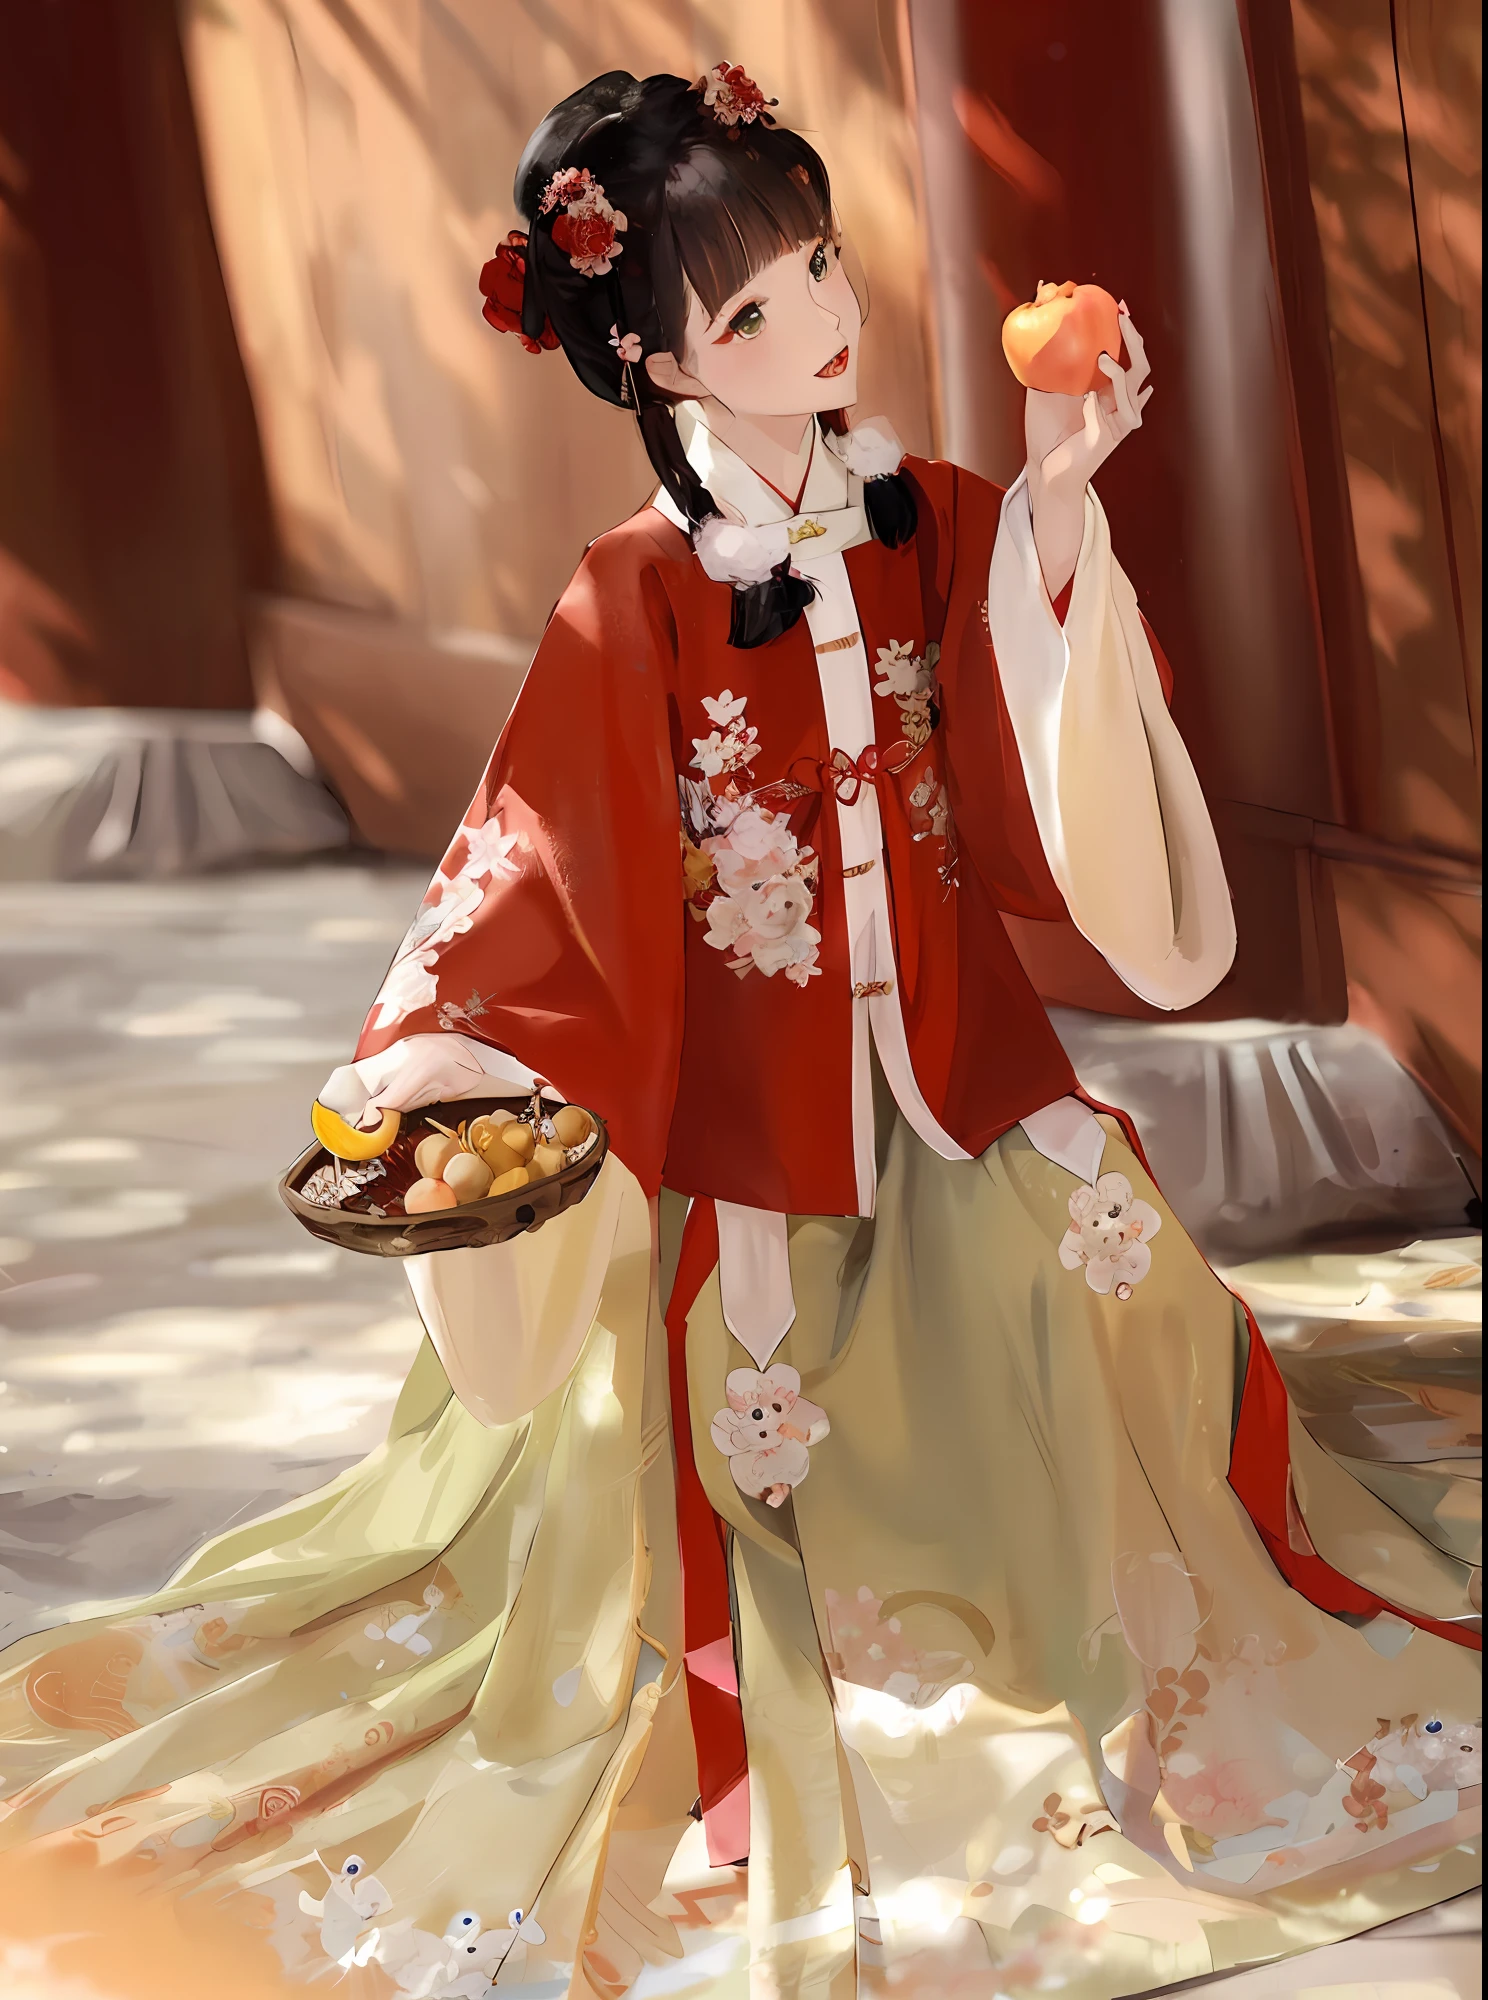 기모노 드레스를 입고 과일 조각을 들고 있는 여자가 있어요, 대전 ， A girl in 한푸, 한푸, 고대 중국 옷을 입고, 중국 전통 의상, 고대 중국 옷을 입고, 꽃무늬의 빨간 기모노, White 한푸, 중국 의상, 화려한 실크 옷을 입고, 중국어 번체, 전통 의상, 중국 스타일, 전통 의상, 중국 복장